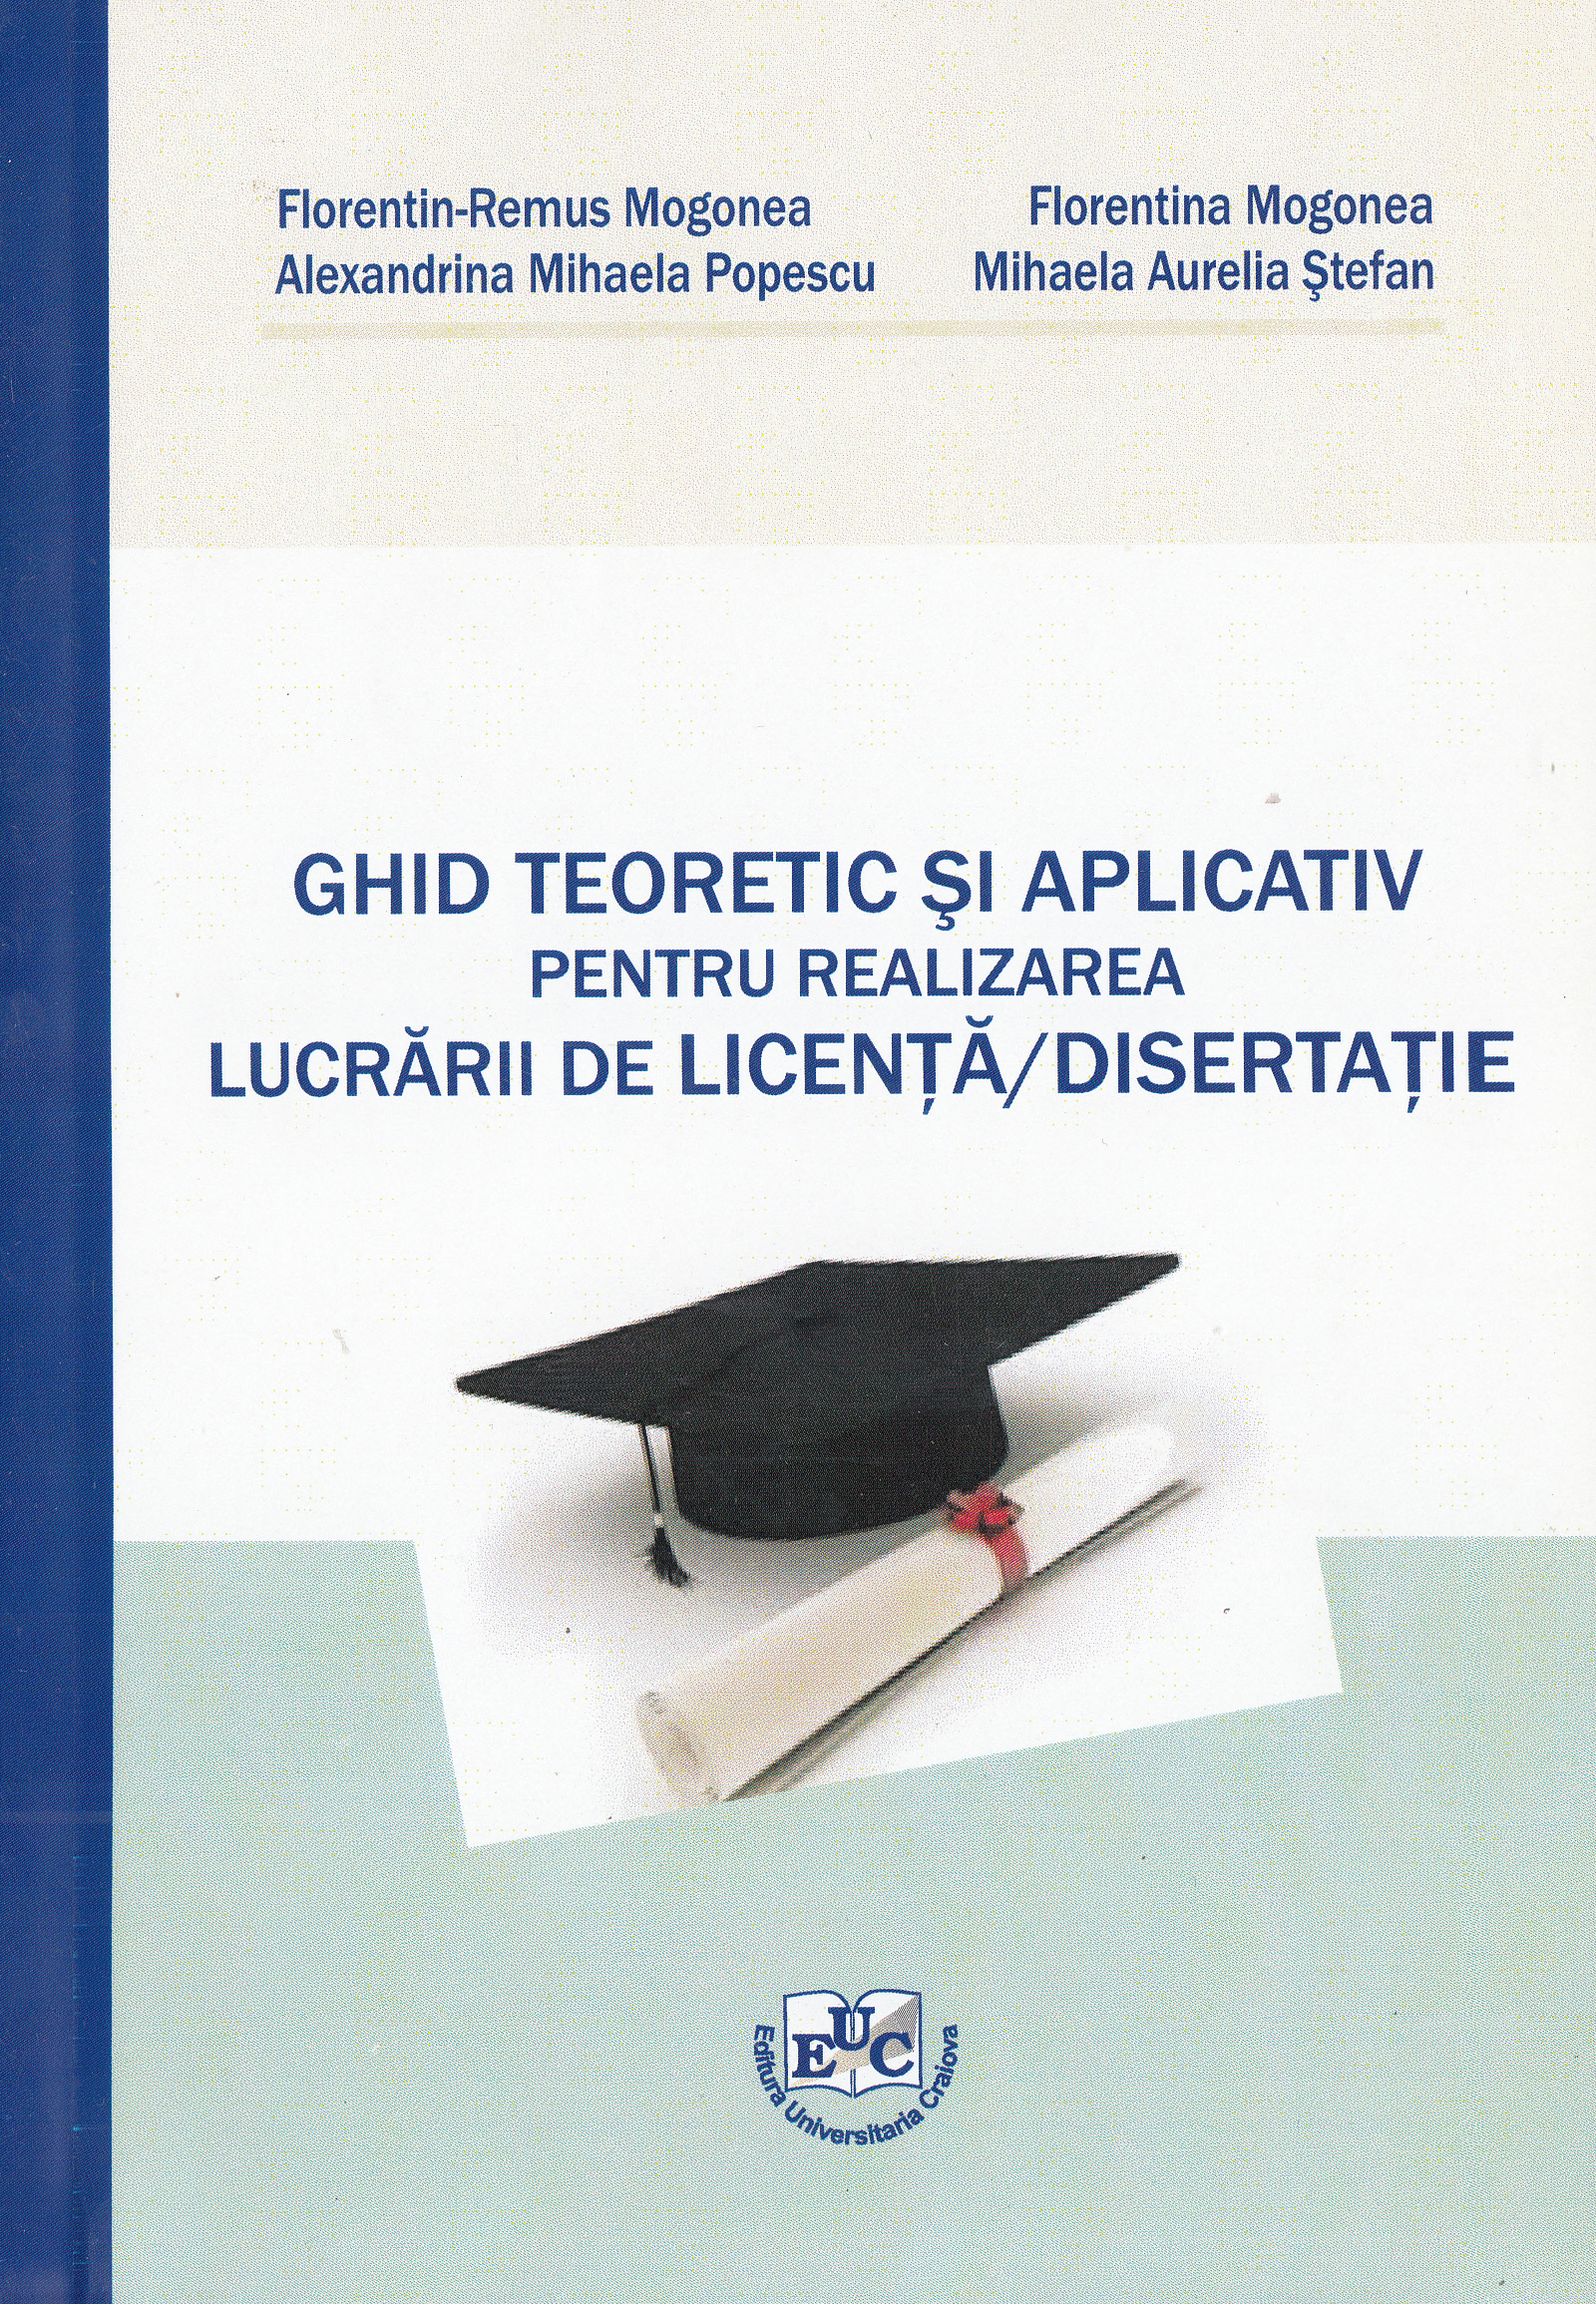 Ghid teoretic si aplicativ pentru realizarea lucrarii de licenta, disertatie - Florentin-Remus Mogonea